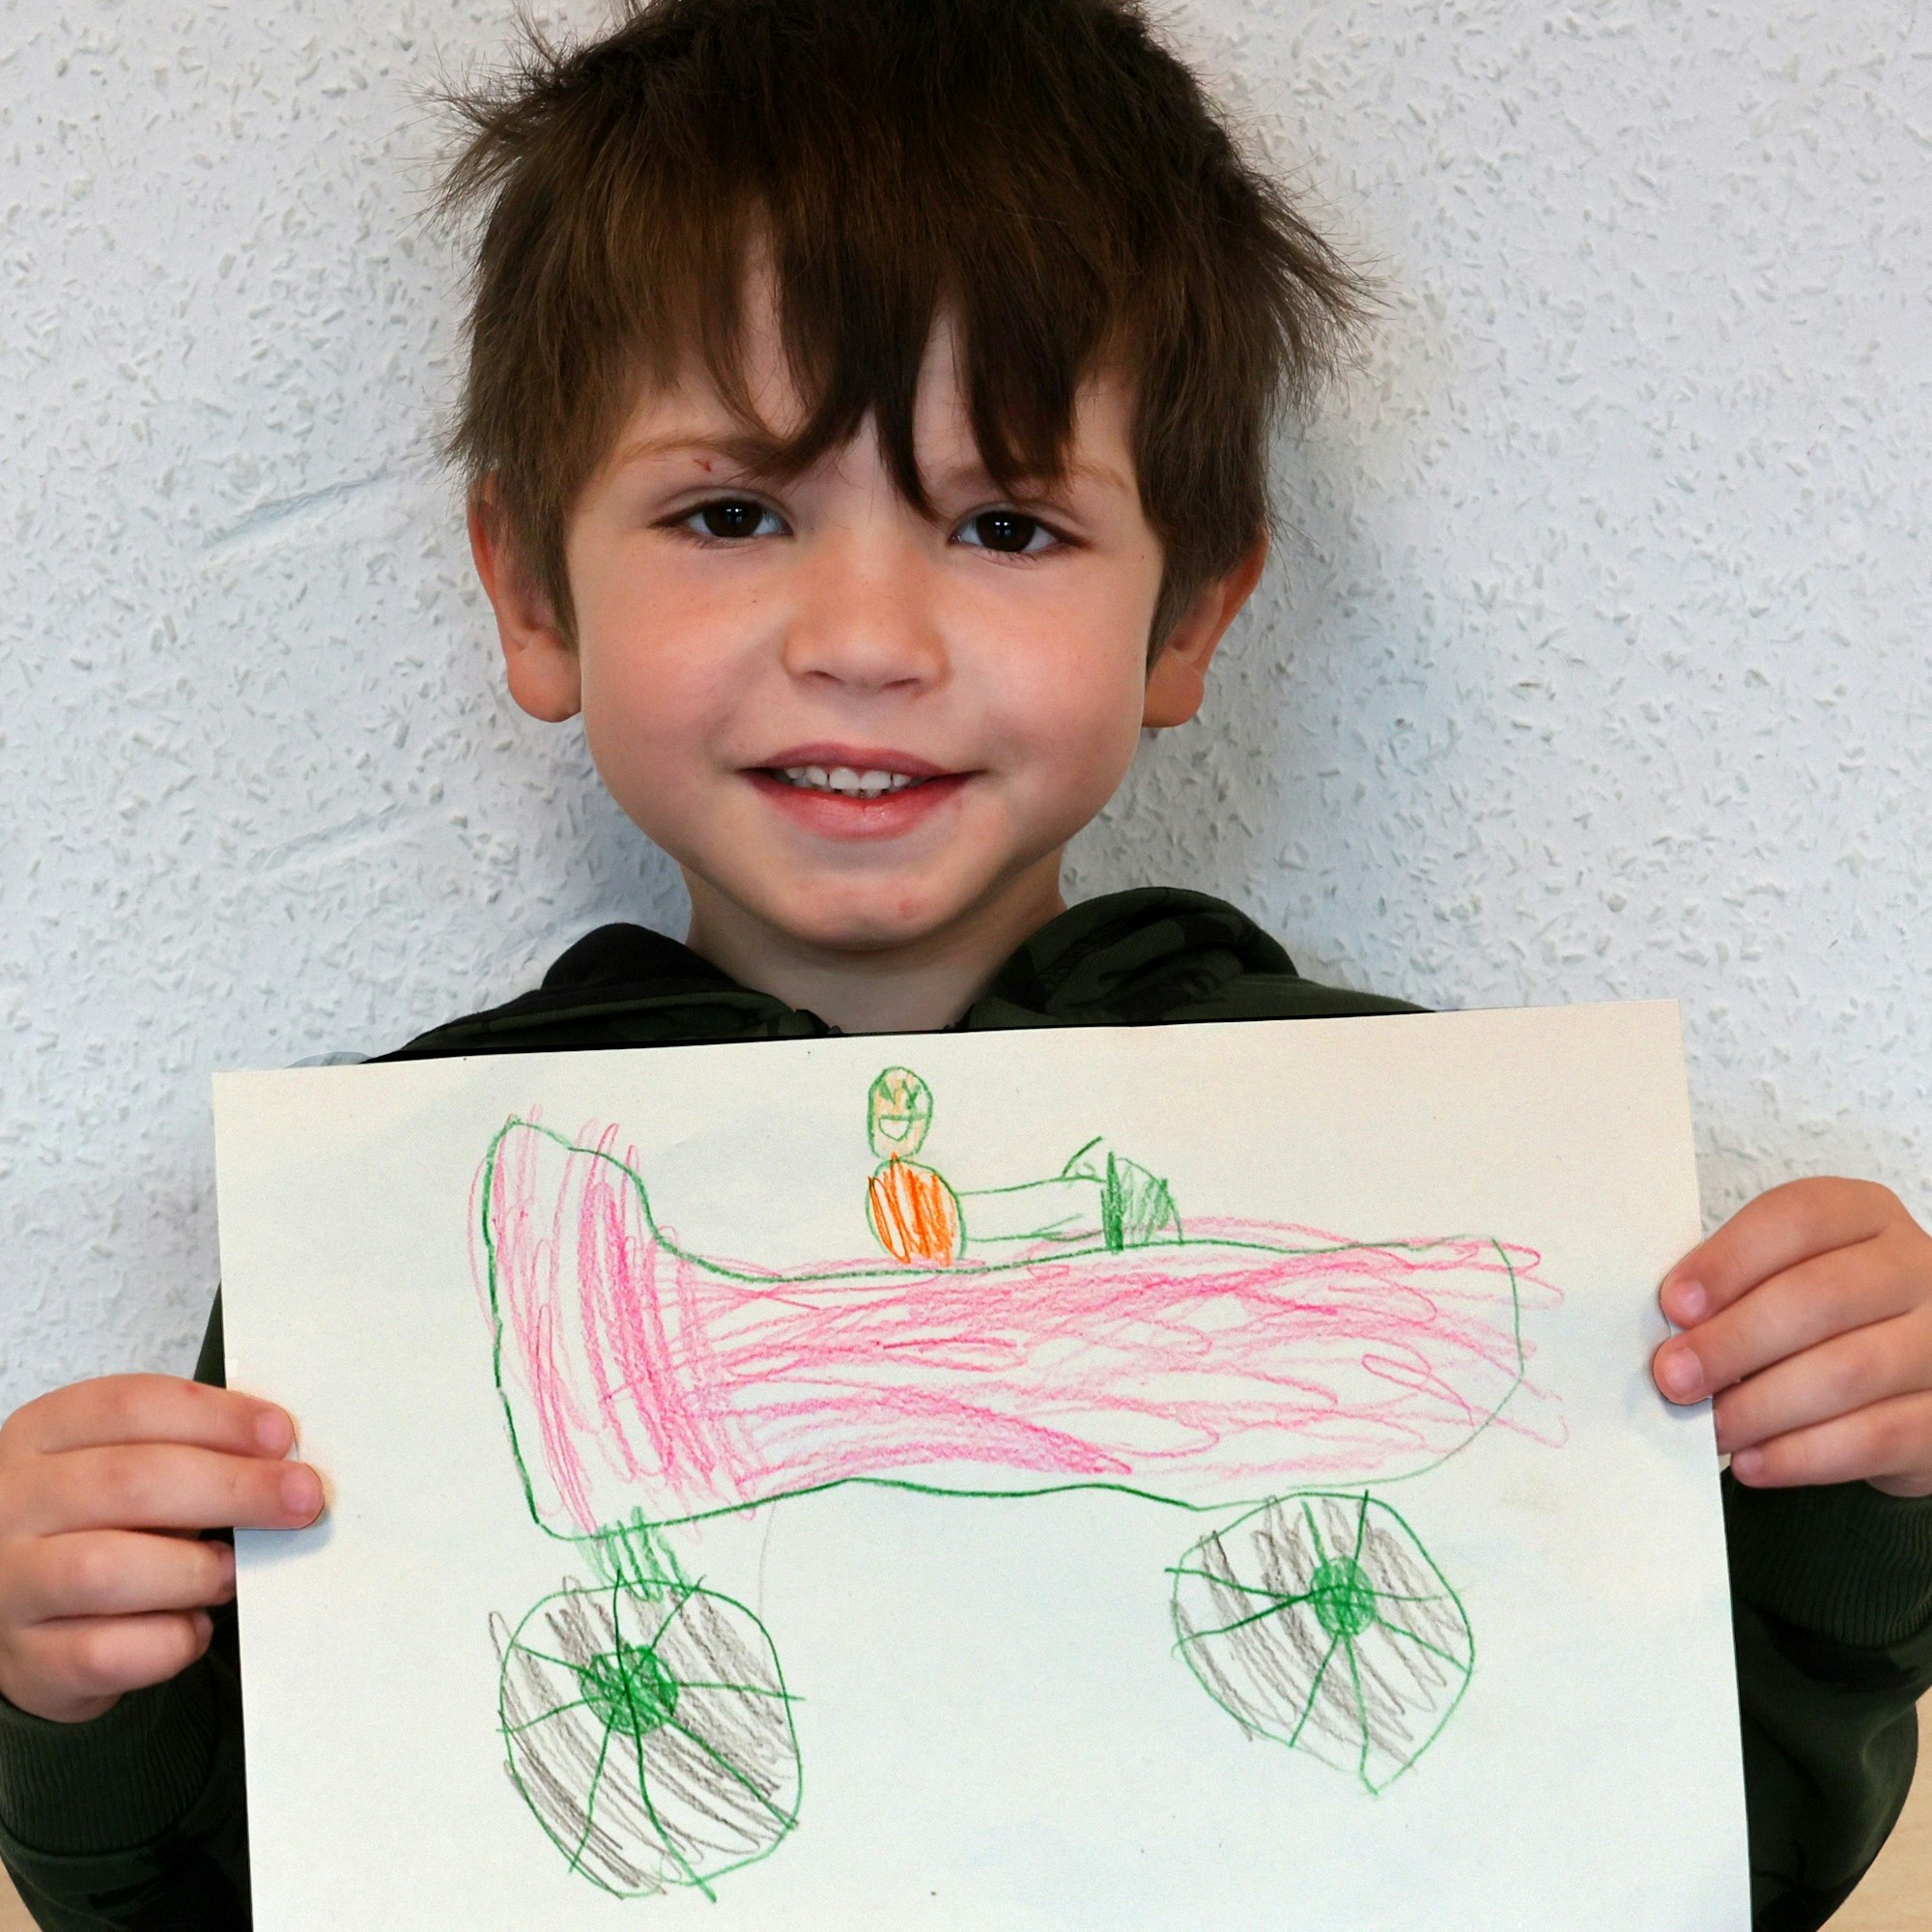 Ein Junge hält einen gemalten Wunschzettel in der Hand und blickt in die Kamera.

